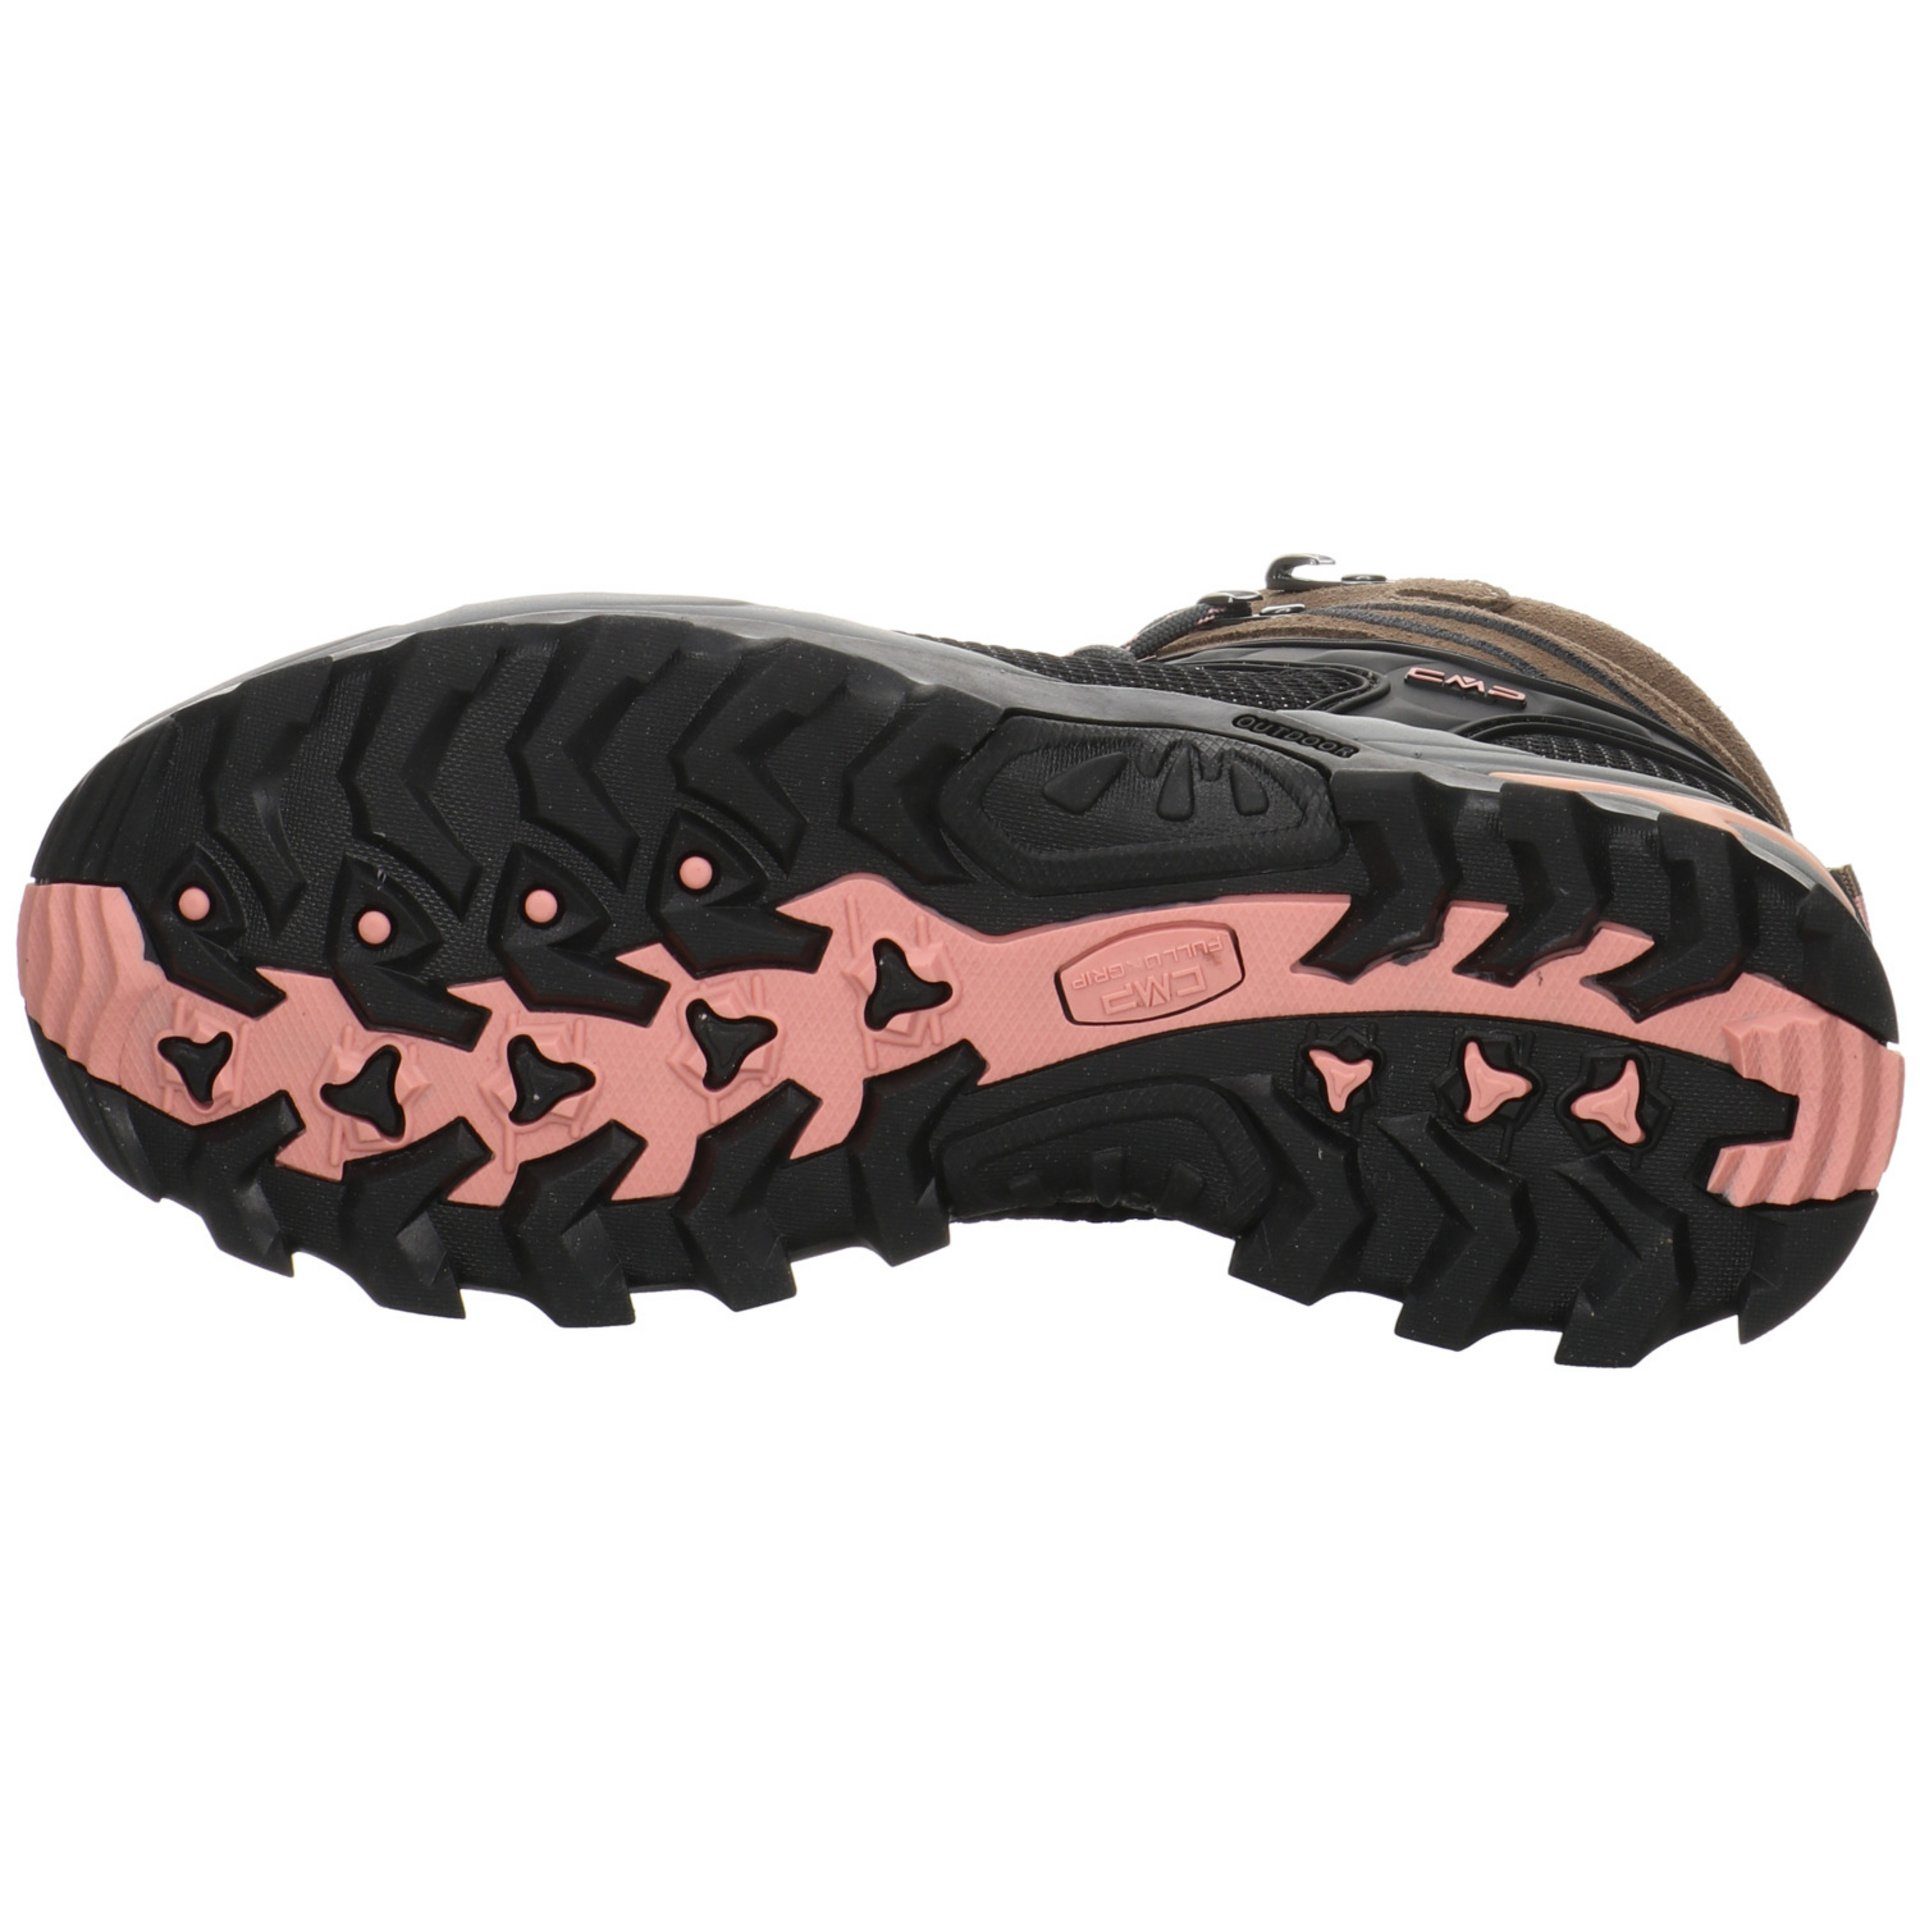 Outdoor Outdoorschuh Outdoorschuh Rigel Leder-/Textilkombination Mid CMP Damen Schuhe CENERE